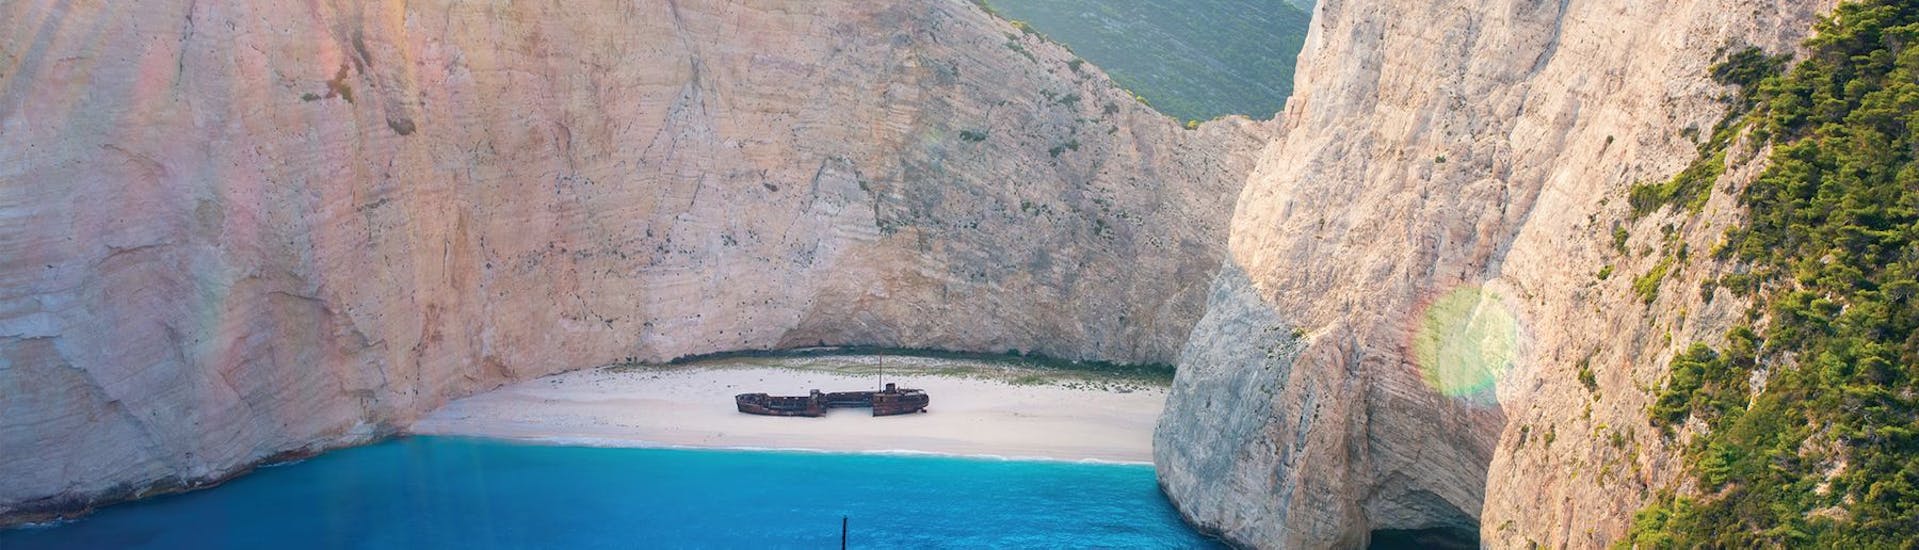 Imagen del famoso barco hundido en la playa del Navagio, accesbile con el alquiler de barco de Best of Zante